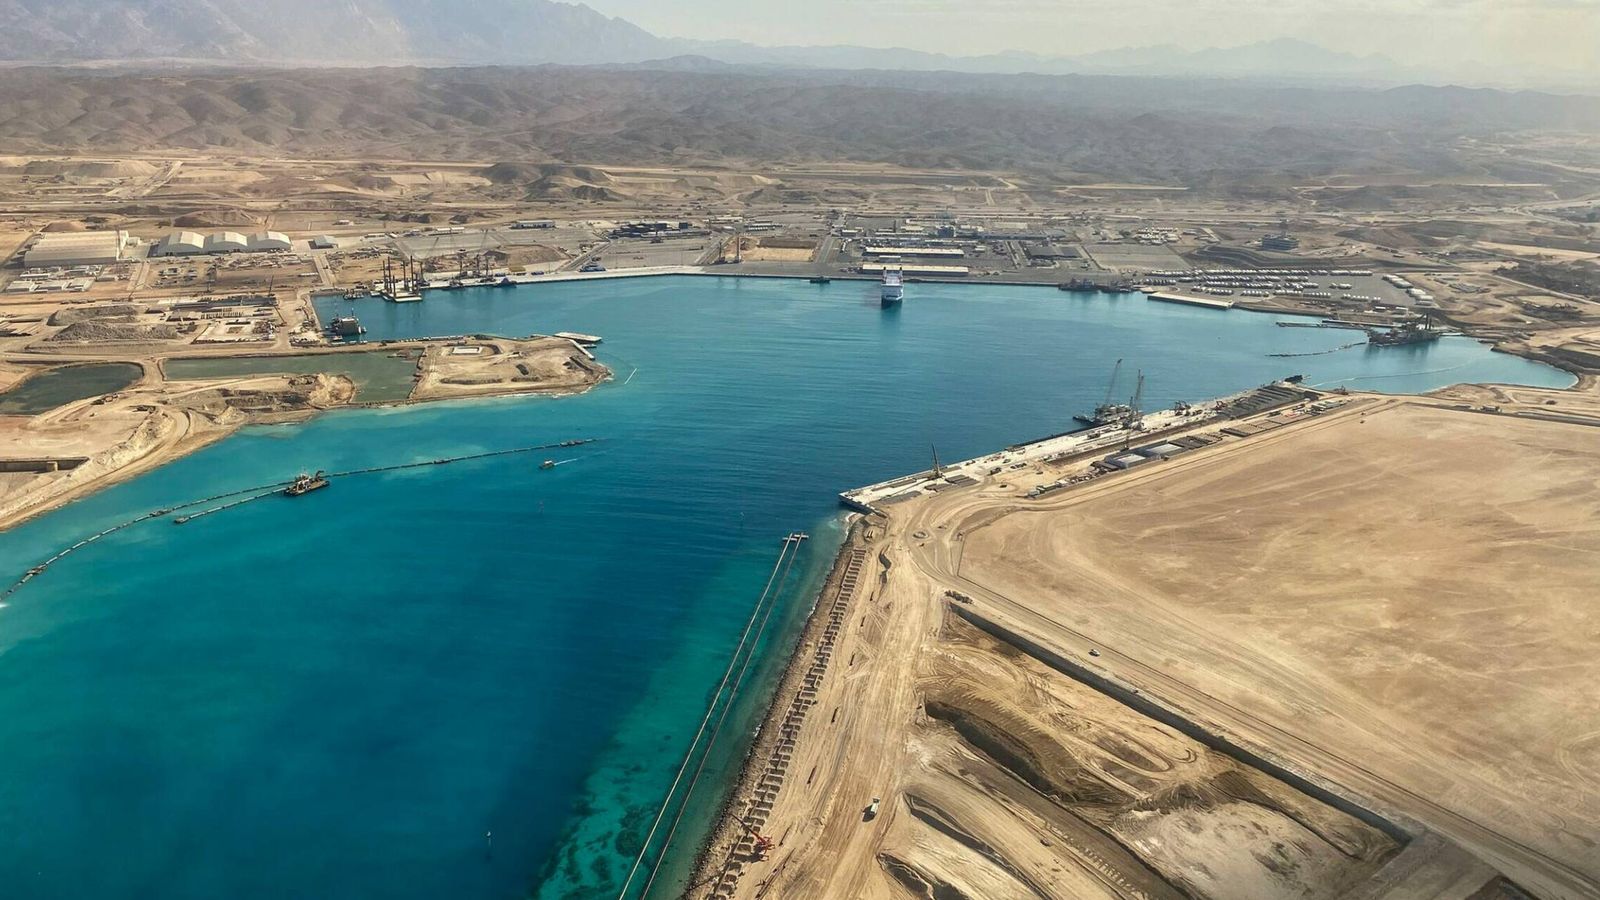 nuevas fotos aéreas muestran que el proyecto faraónico de arabia saudí es real